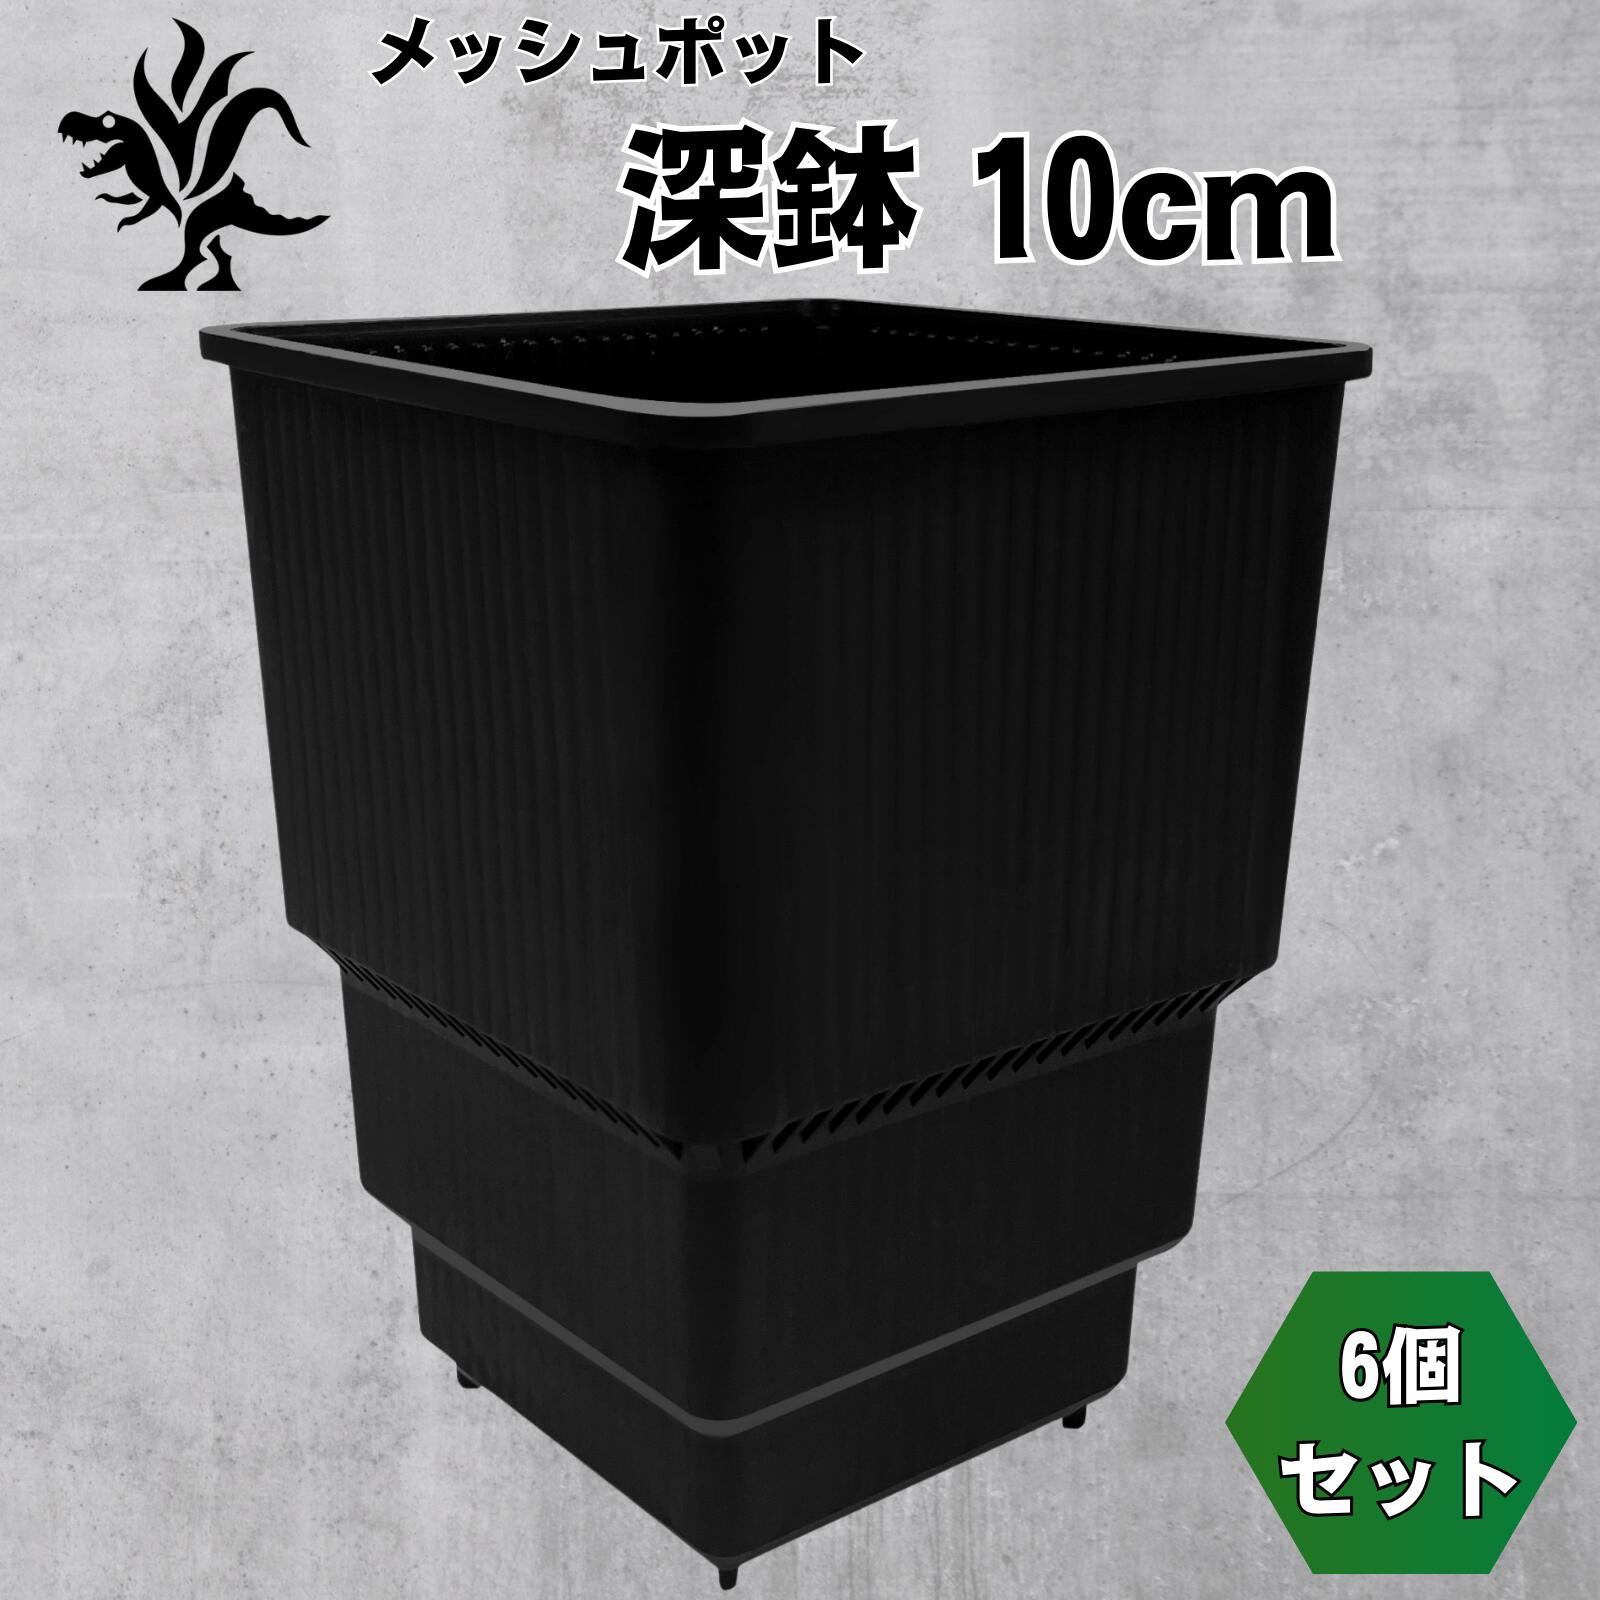 Kaiiju Plant メッシュポット サークリングしない プラ鉢 アガベ 多肉 サボテン用 排水 速乾 6個セット (深鉢 10cm)